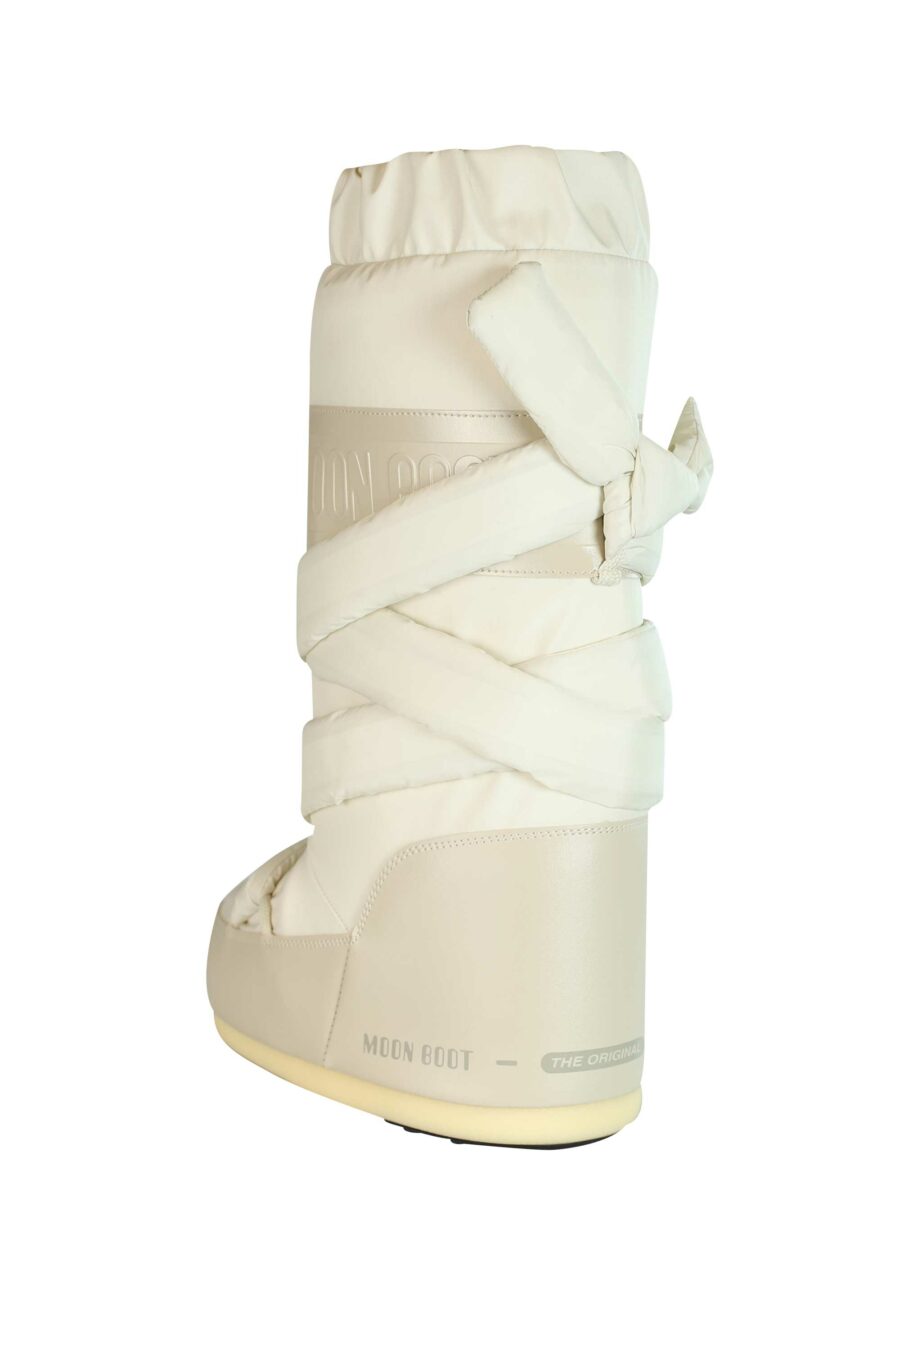 Weiße Stiefel mit braunem, schneebedecktem Logo - 8050459950229 3